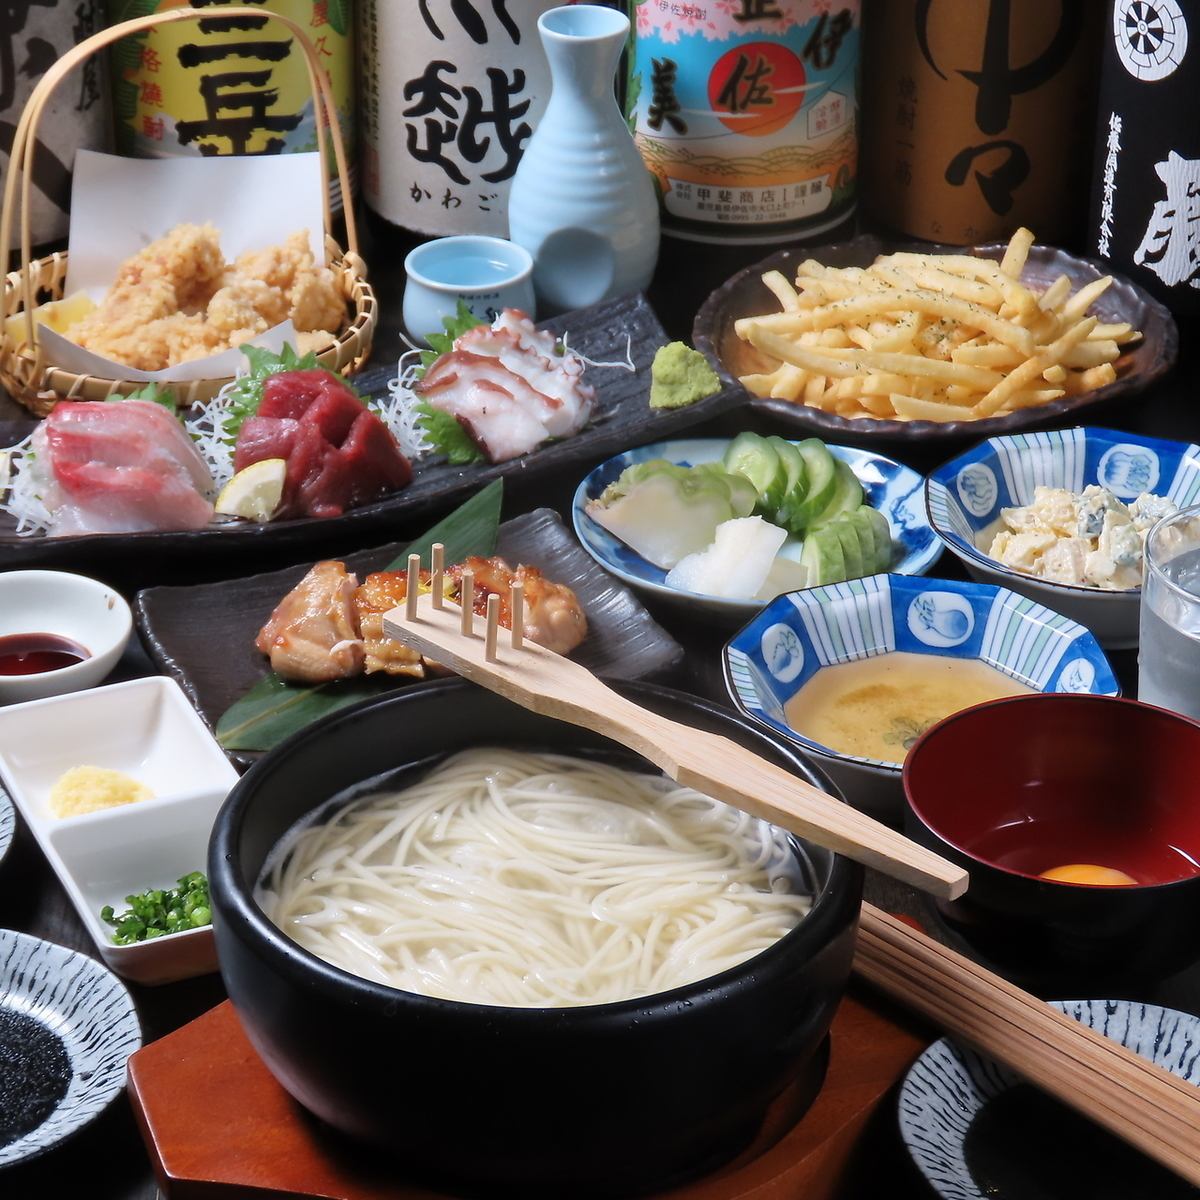 涩谷隐藏的日式居酒屋◆在舒适的氛围中享受日本各地的精致美食